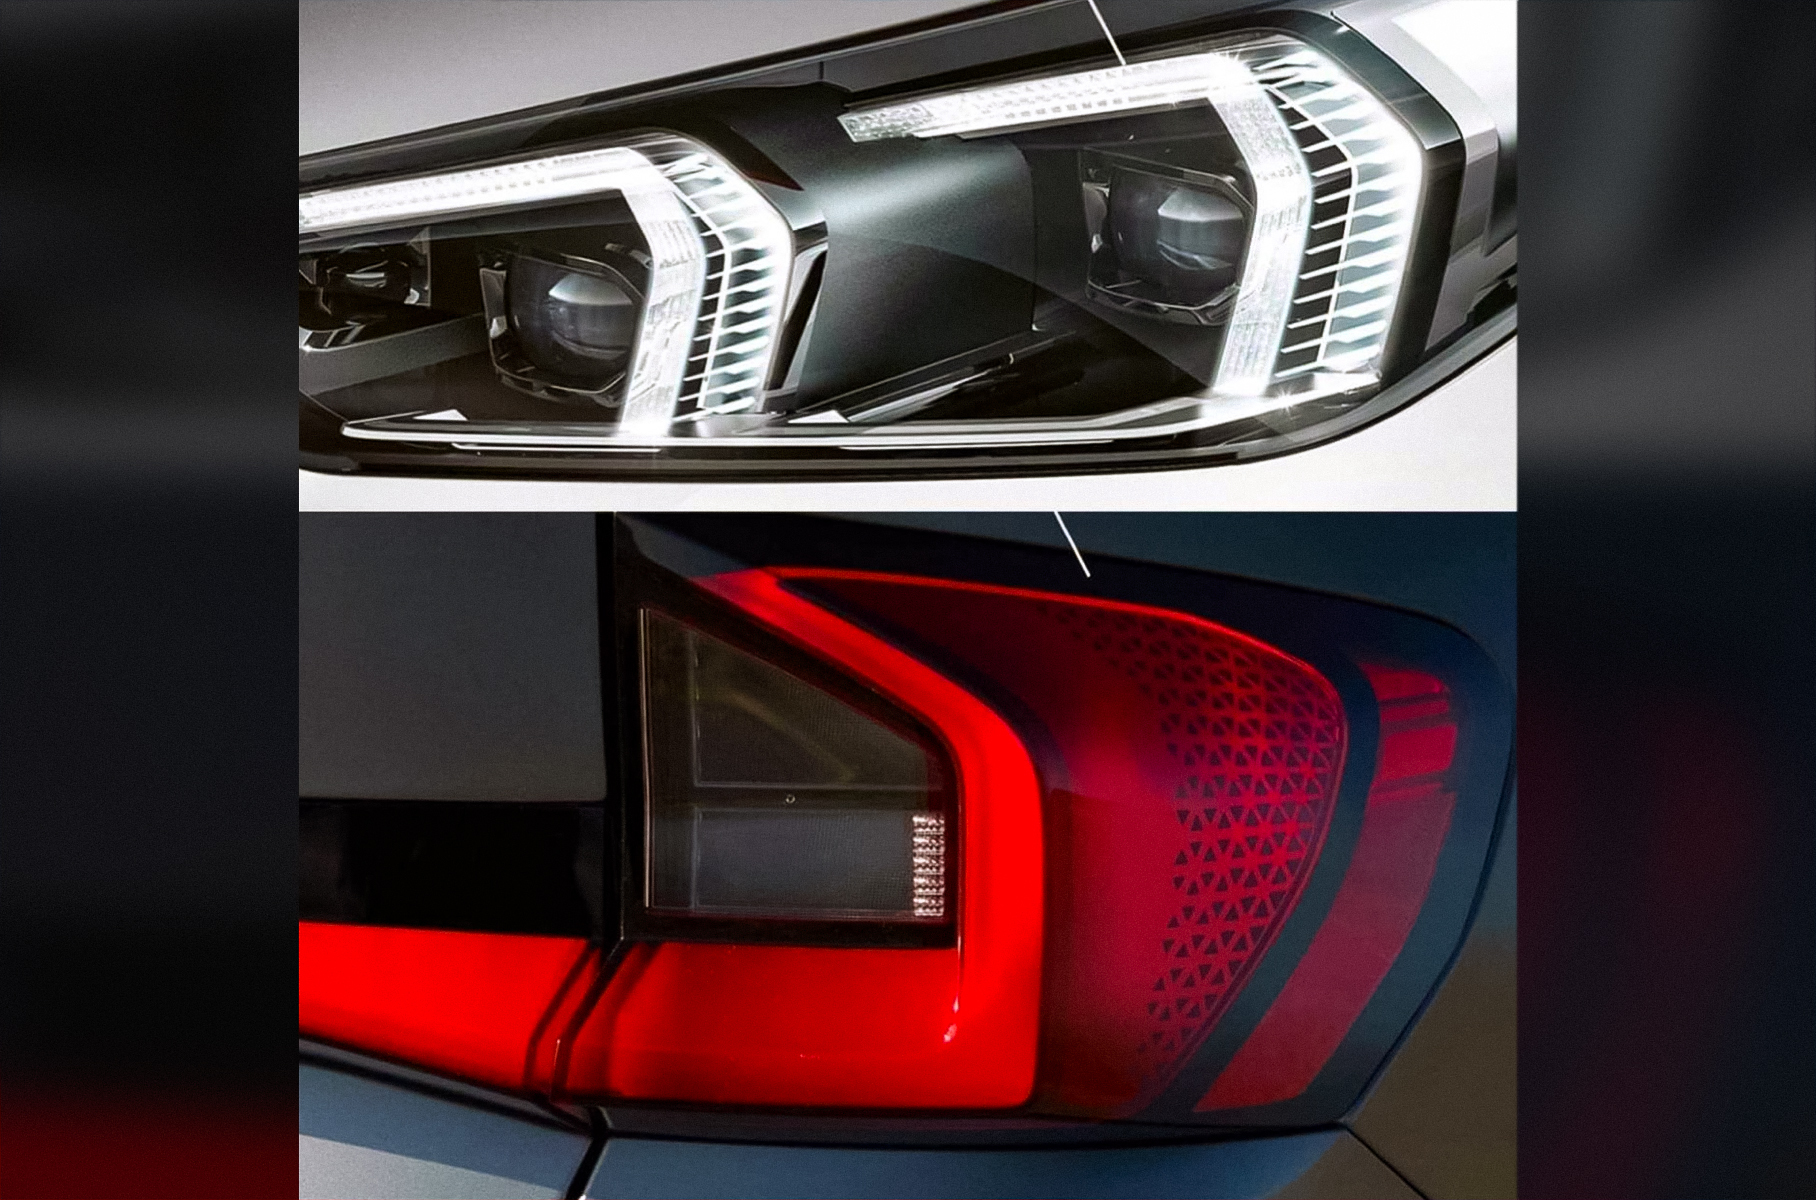 BMW X1 нового поколения: появилась информация о дизайне и силовых установках